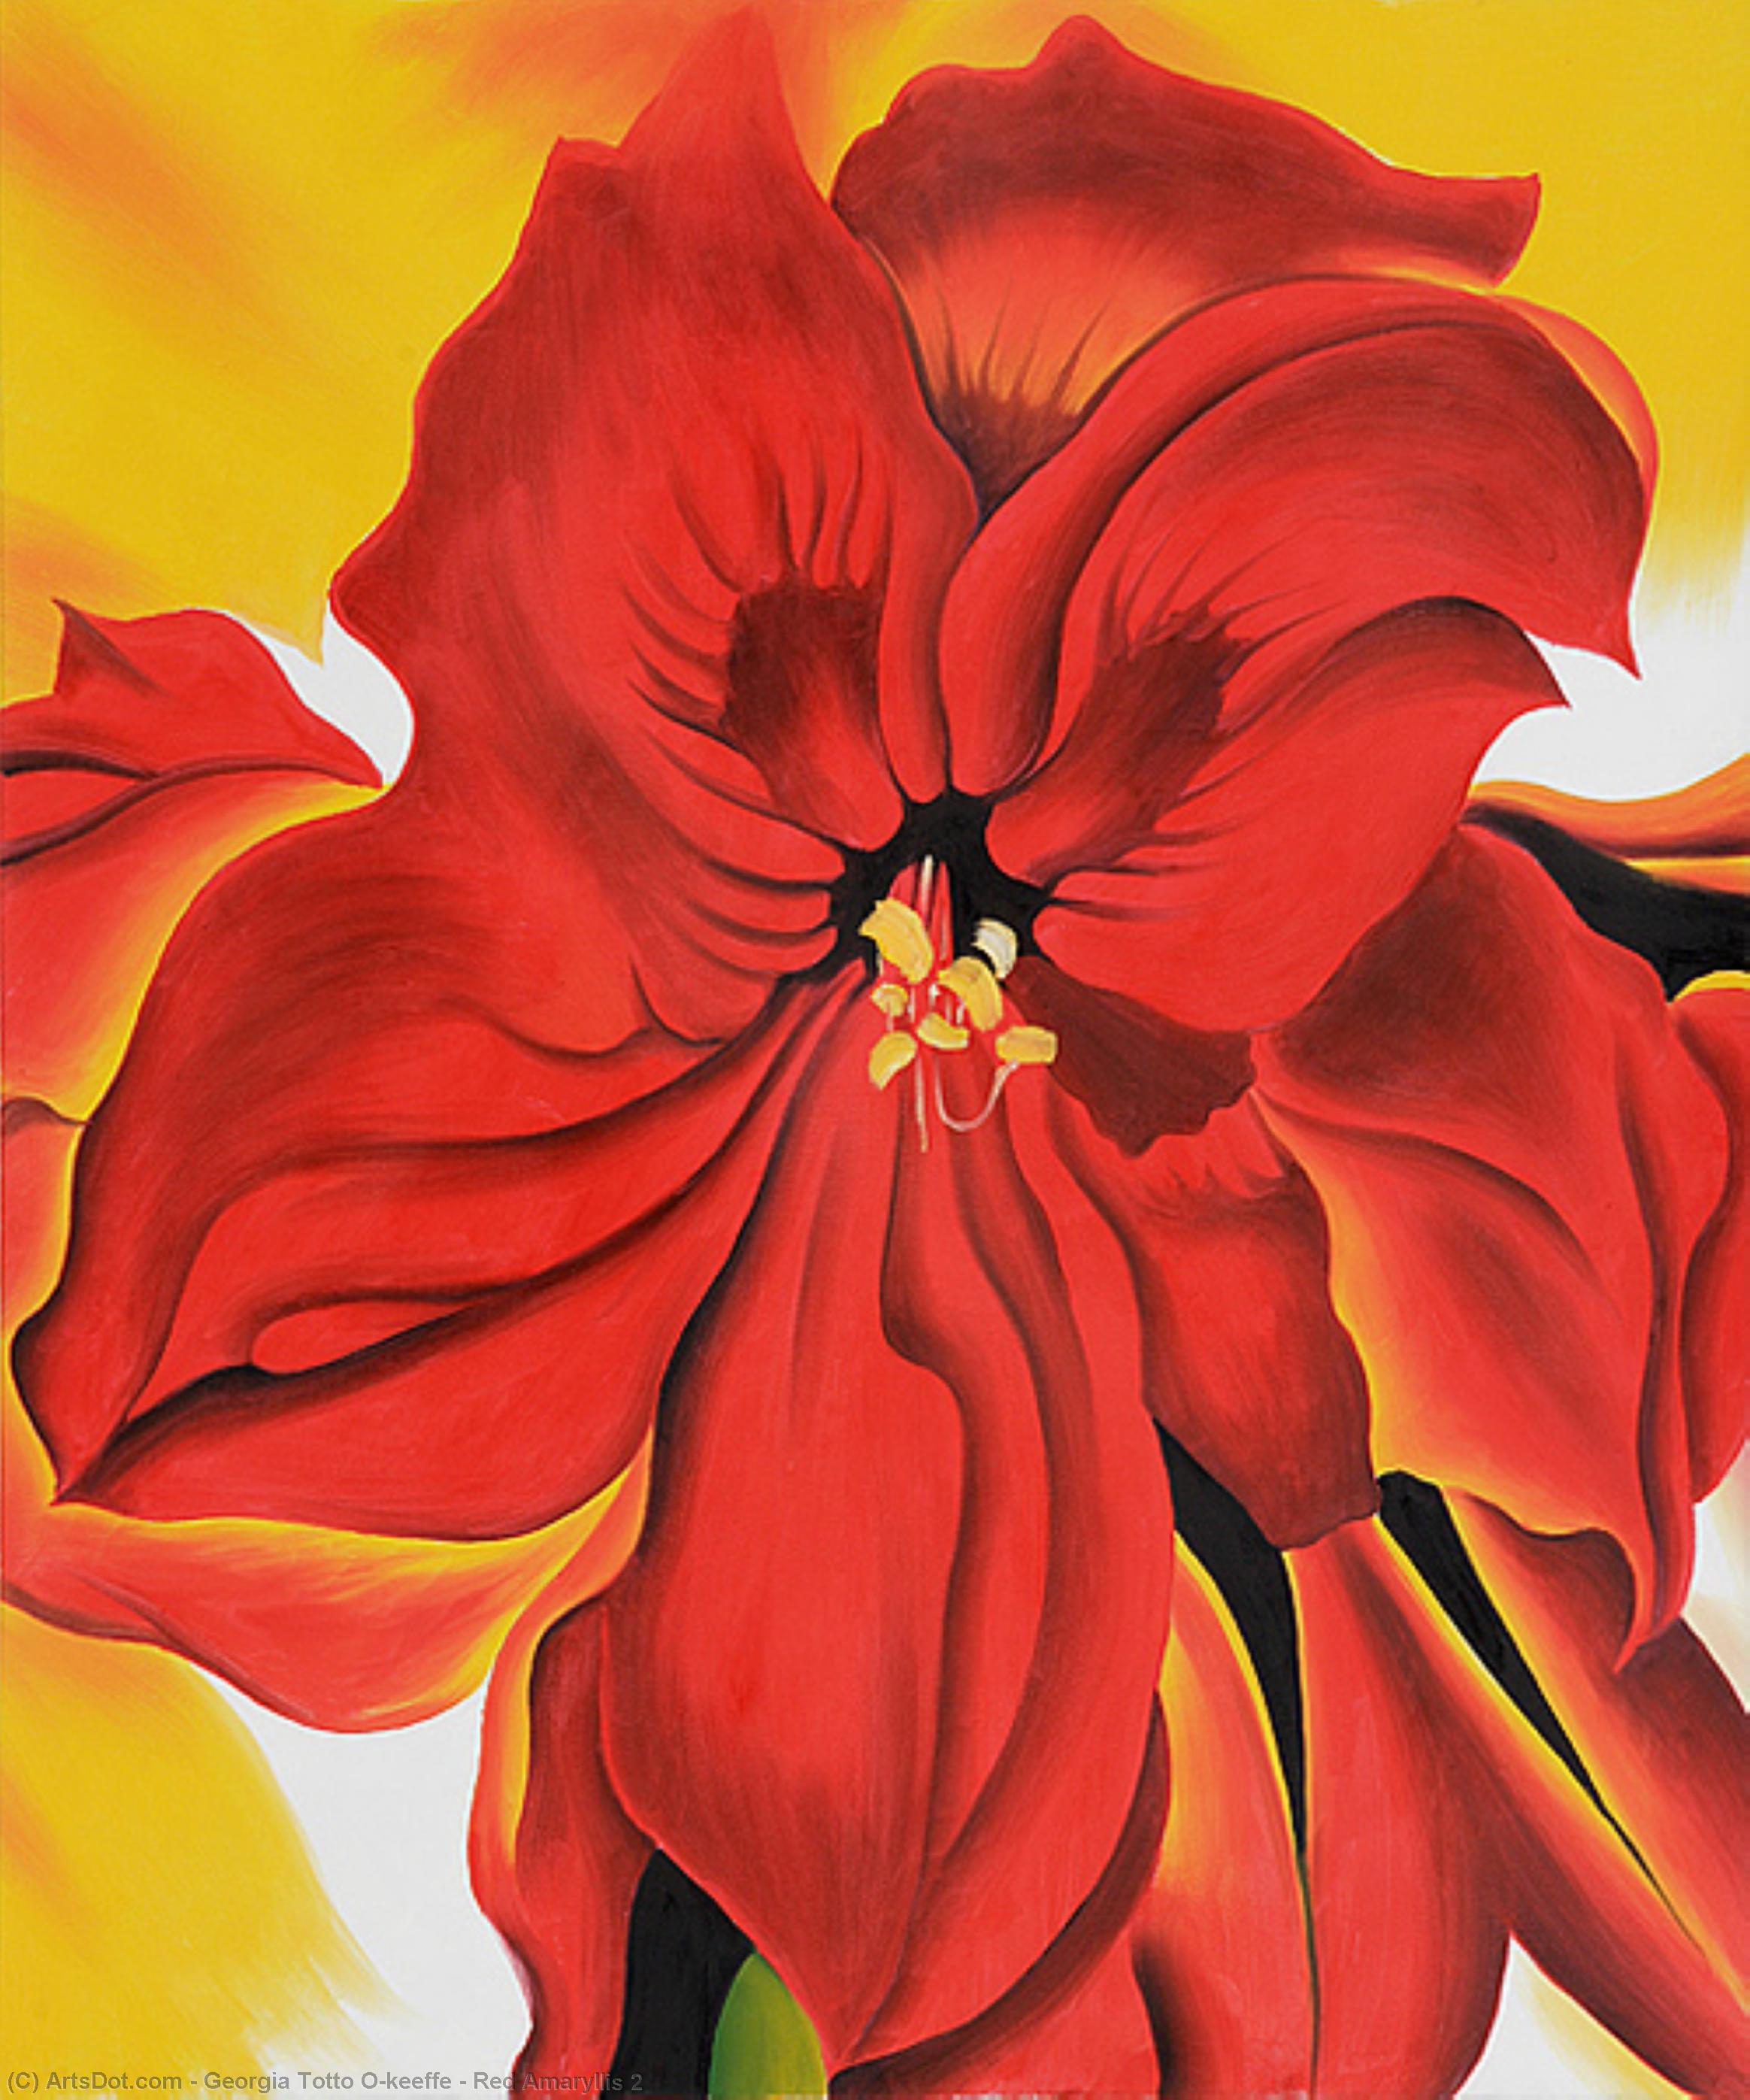 Wikoo.org - موسوعة الفنون الجميلة - اللوحة، العمل الفني Georgia Totto O'keeffe - Red Amaryllis 2